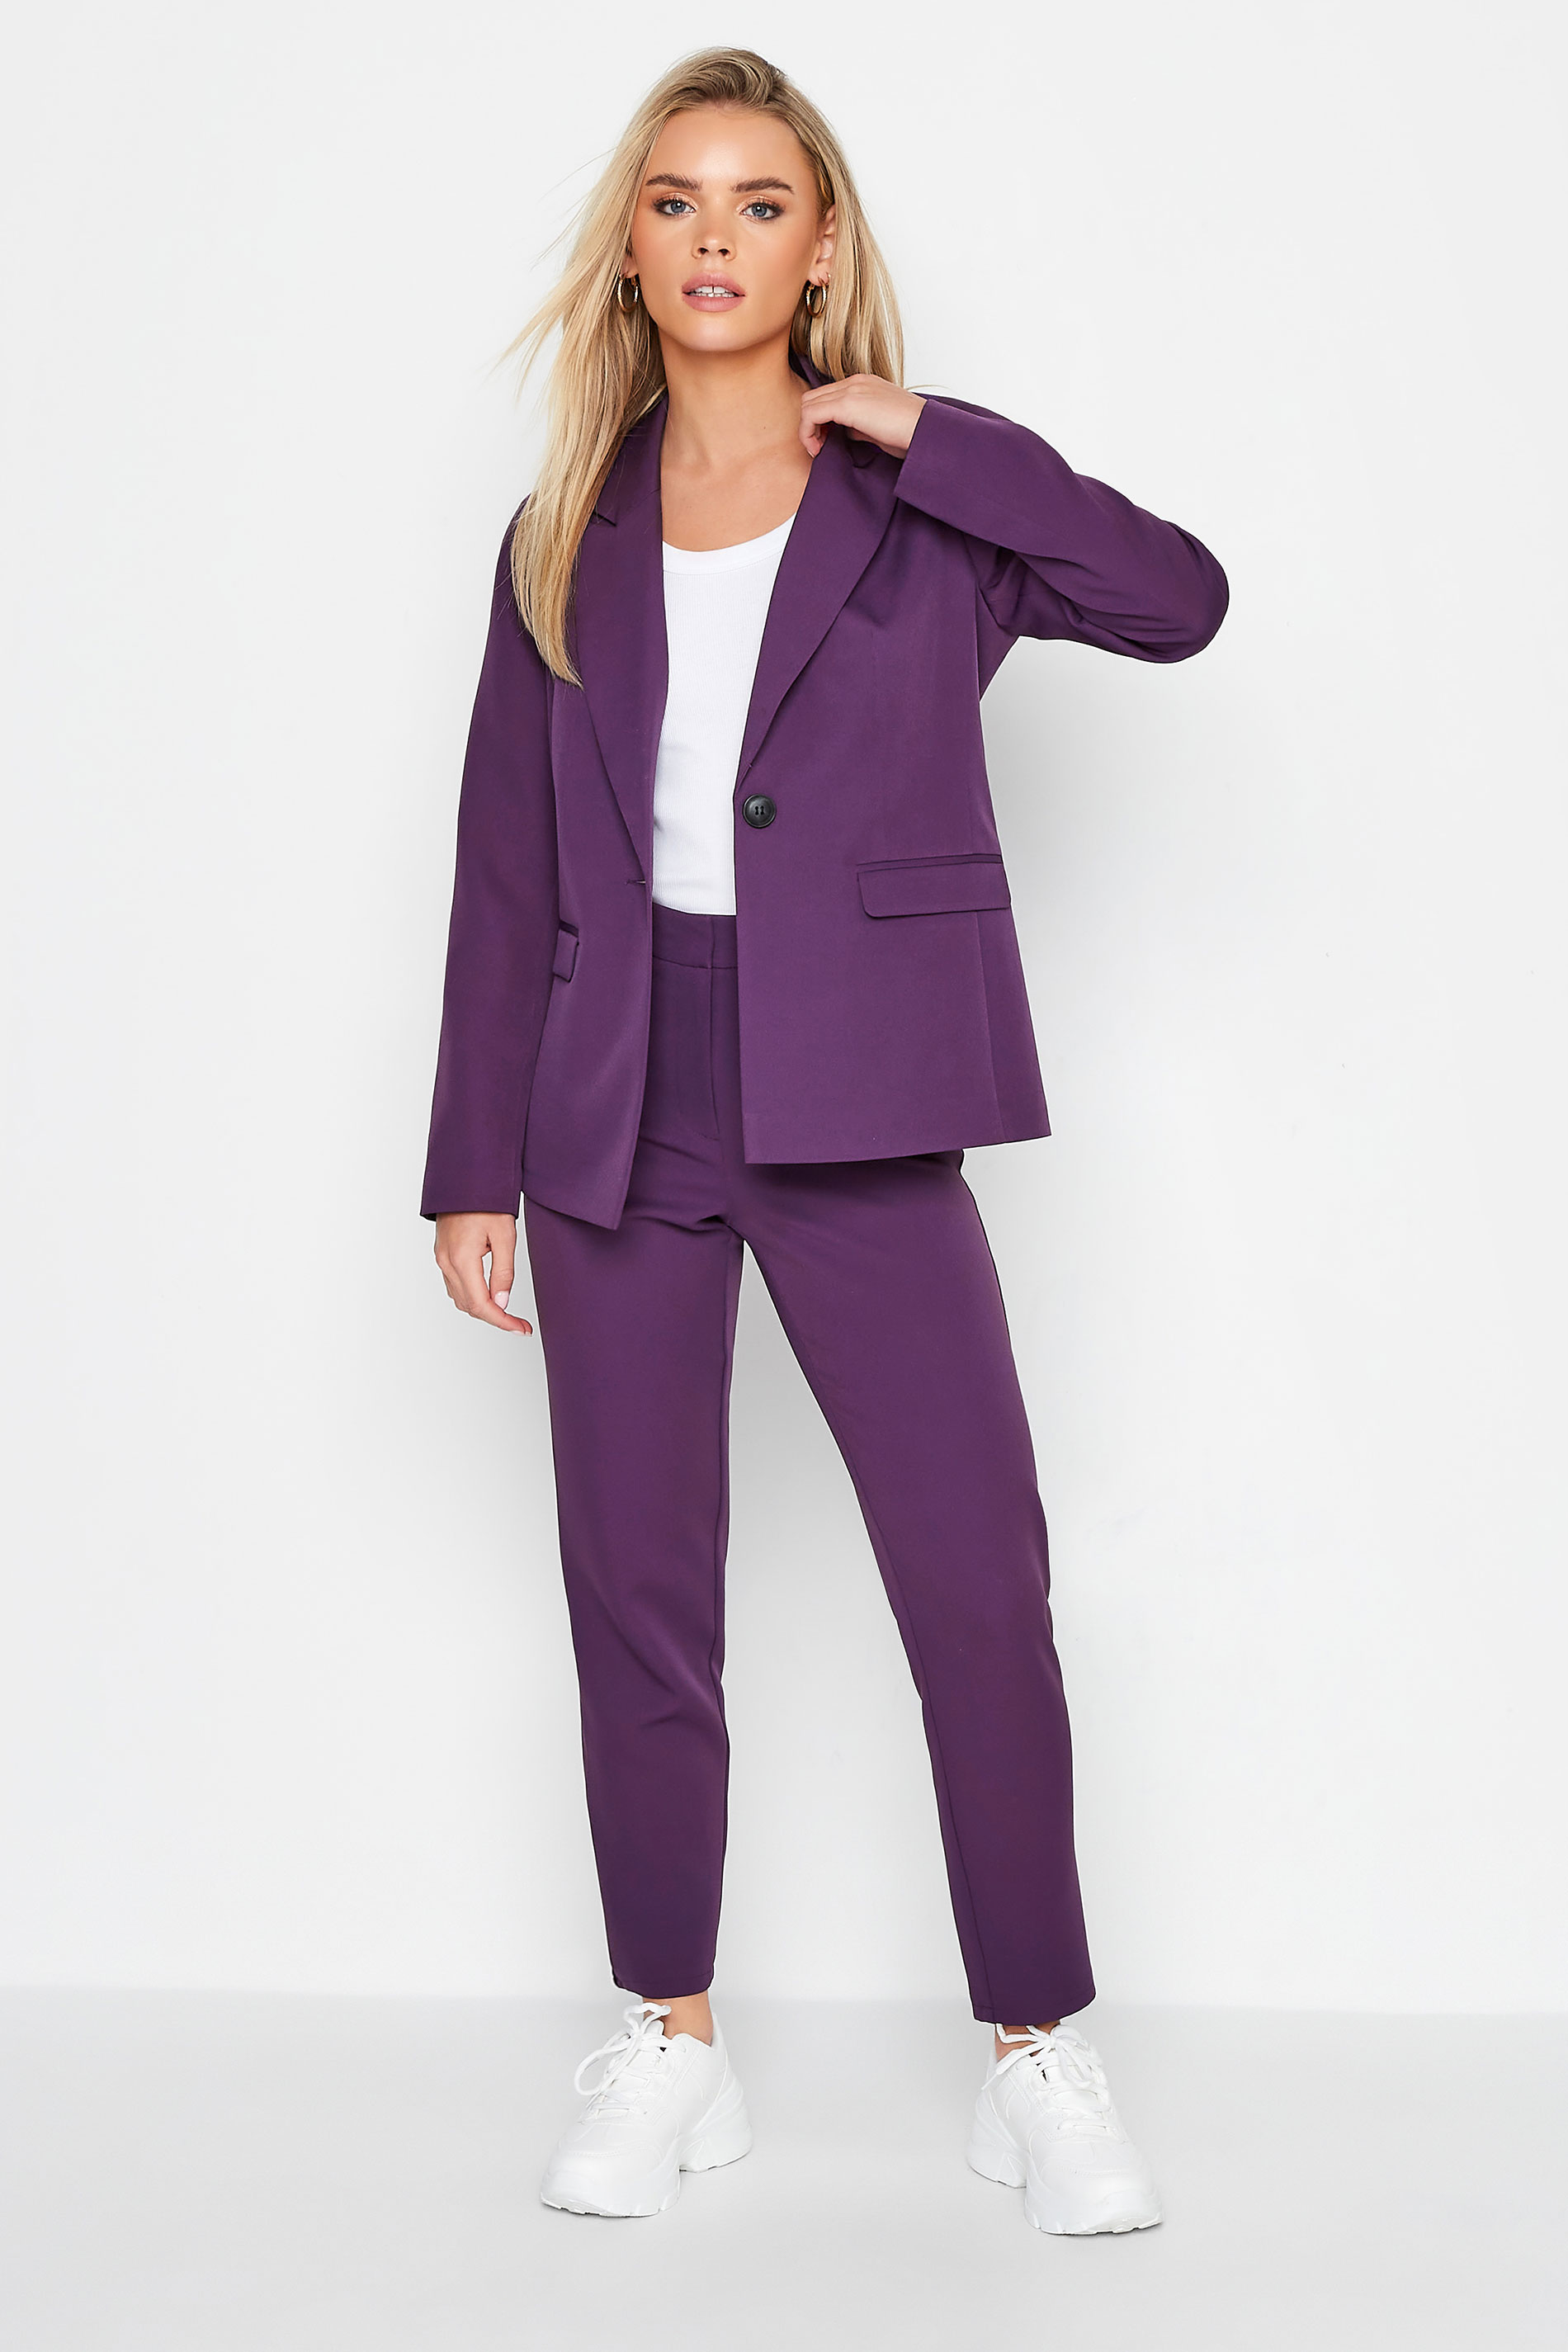 Petite Purple Scuba Lined Blazer | PixieGirl 2